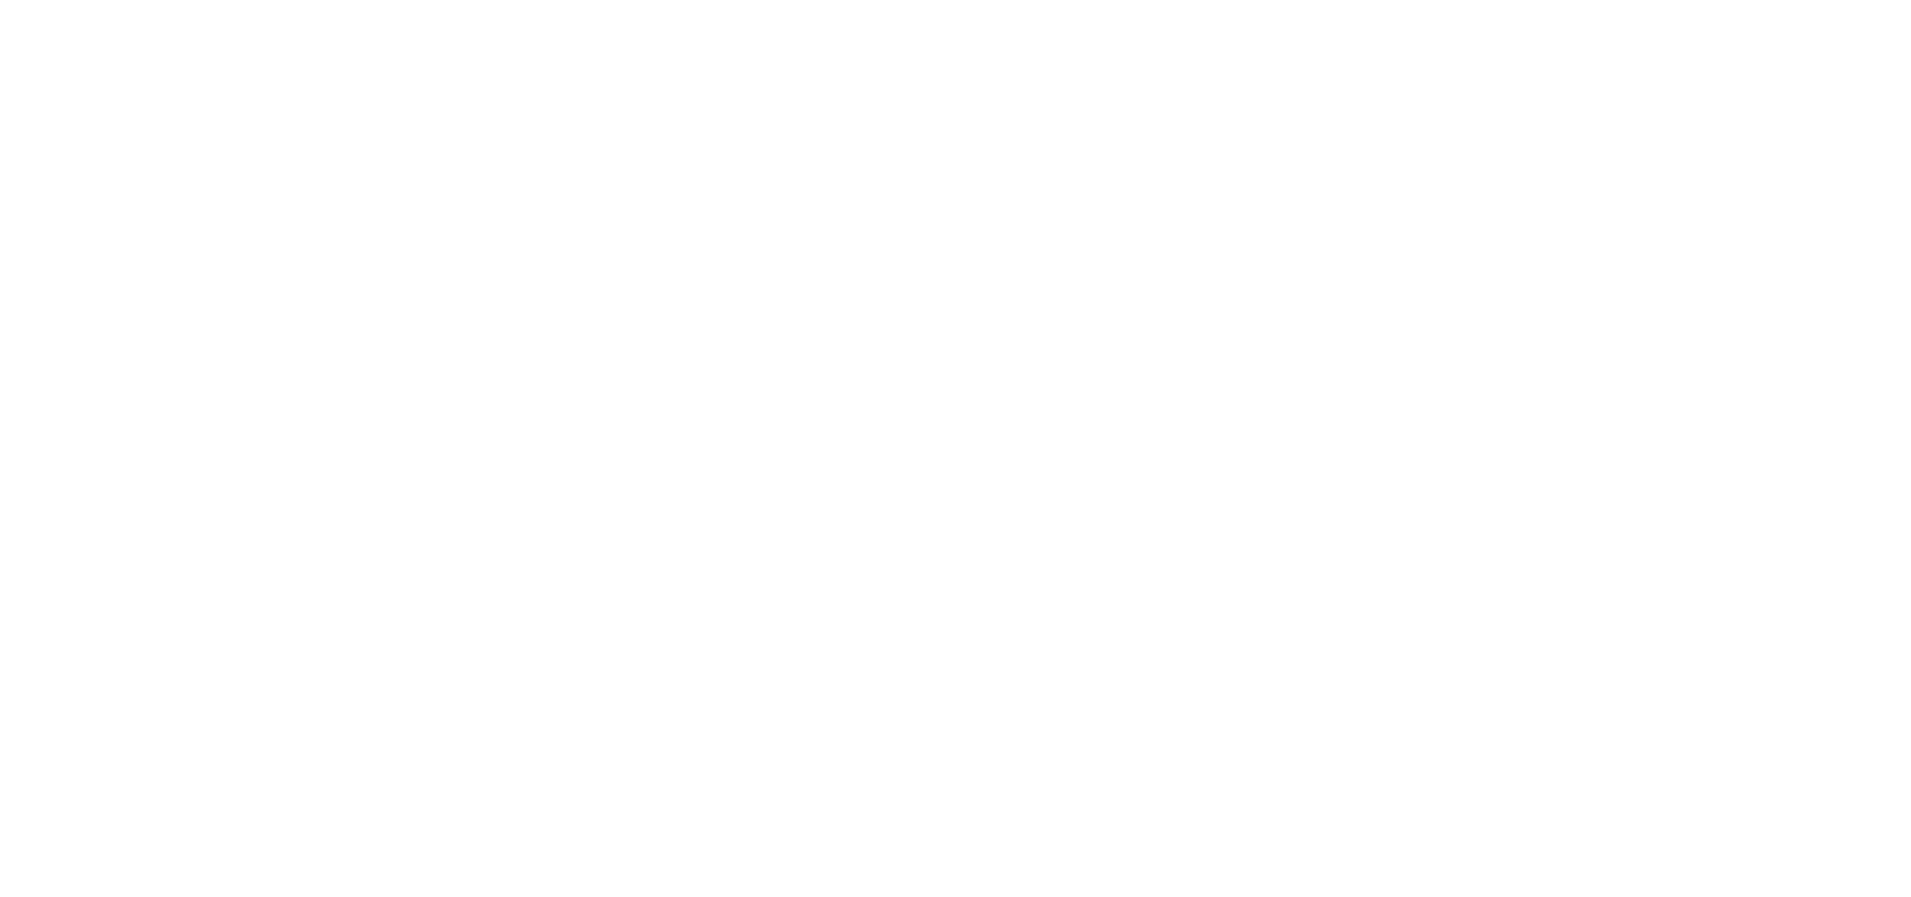 BALLY'S casino EXPRESS LOGO